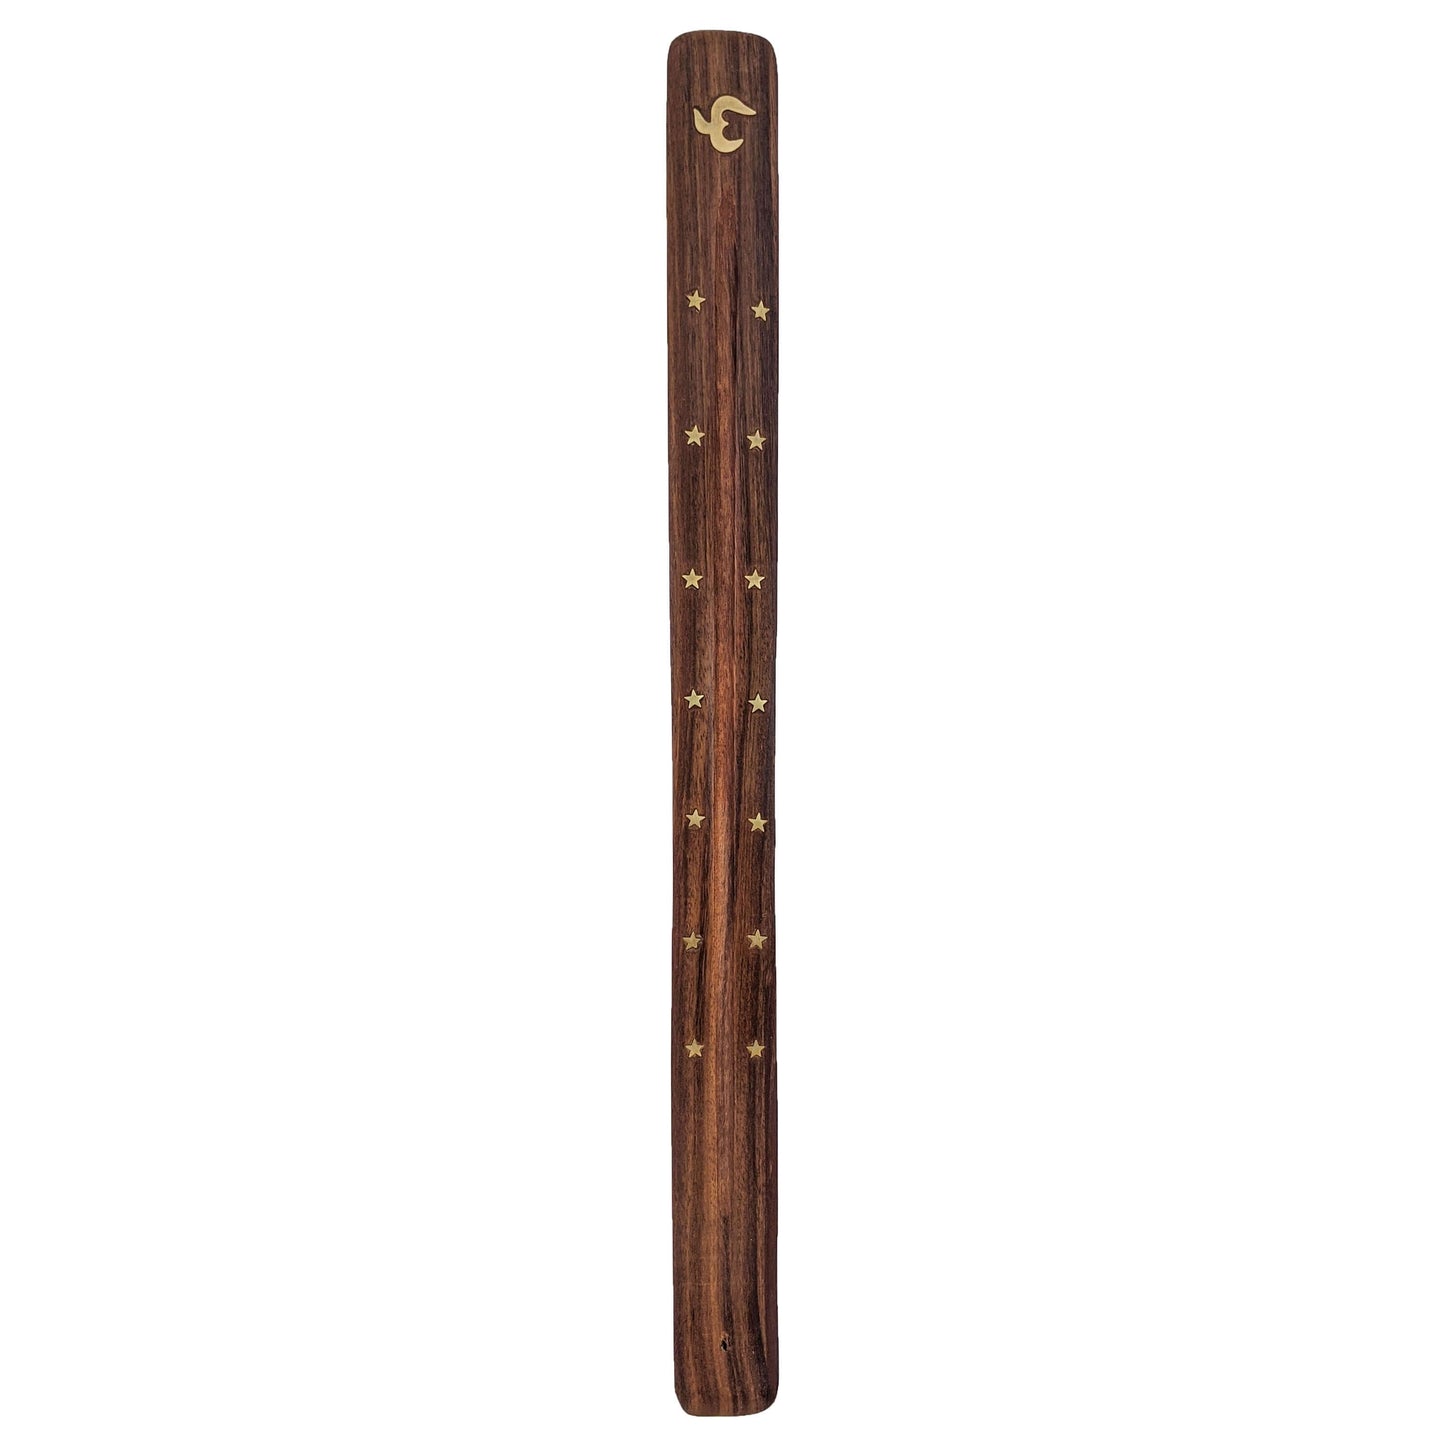 Jumbo Wood Incense Burner & Ash Catcher, Om Symbol Design, 18"